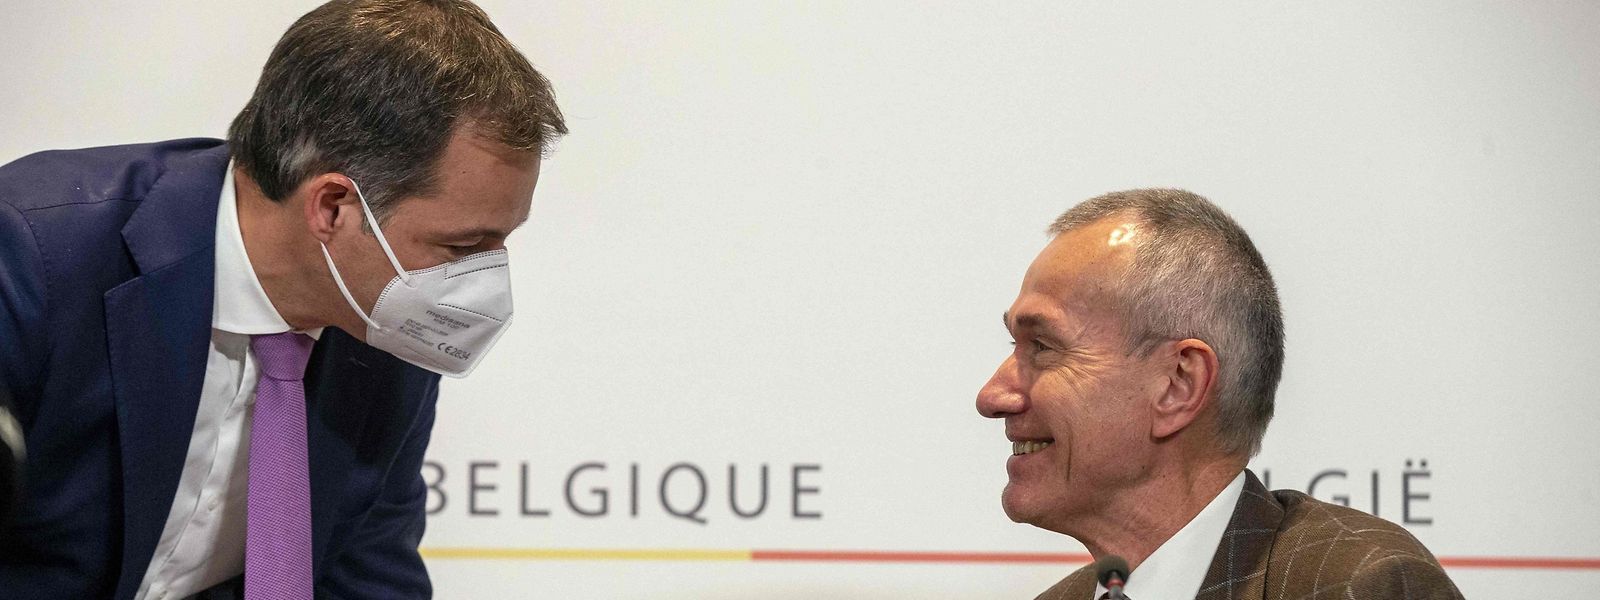 Premier ministre belge et ministre de la Santé misent désormais sur la vaccination des jeunes pour endiguer la montée de l'infection.